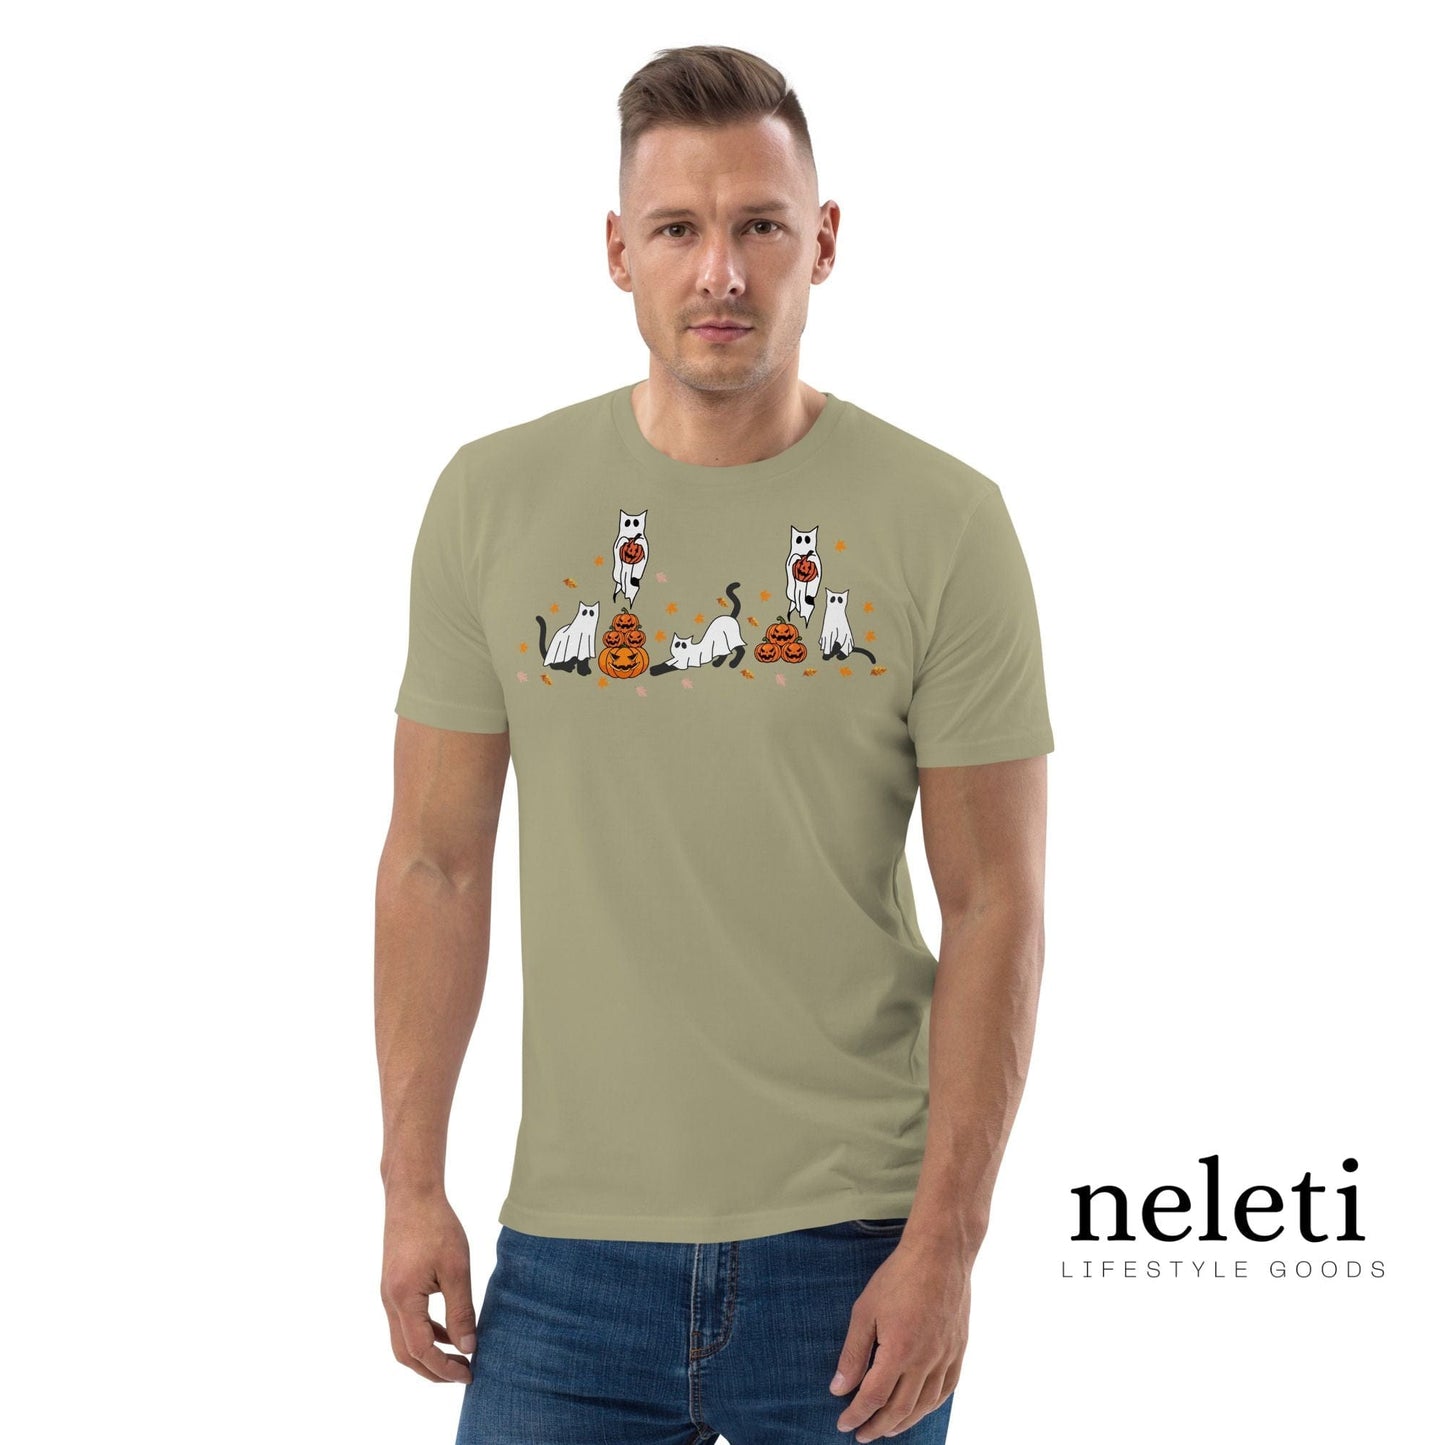 neleti.com-halloween-olive-shirt-for-cat-lover